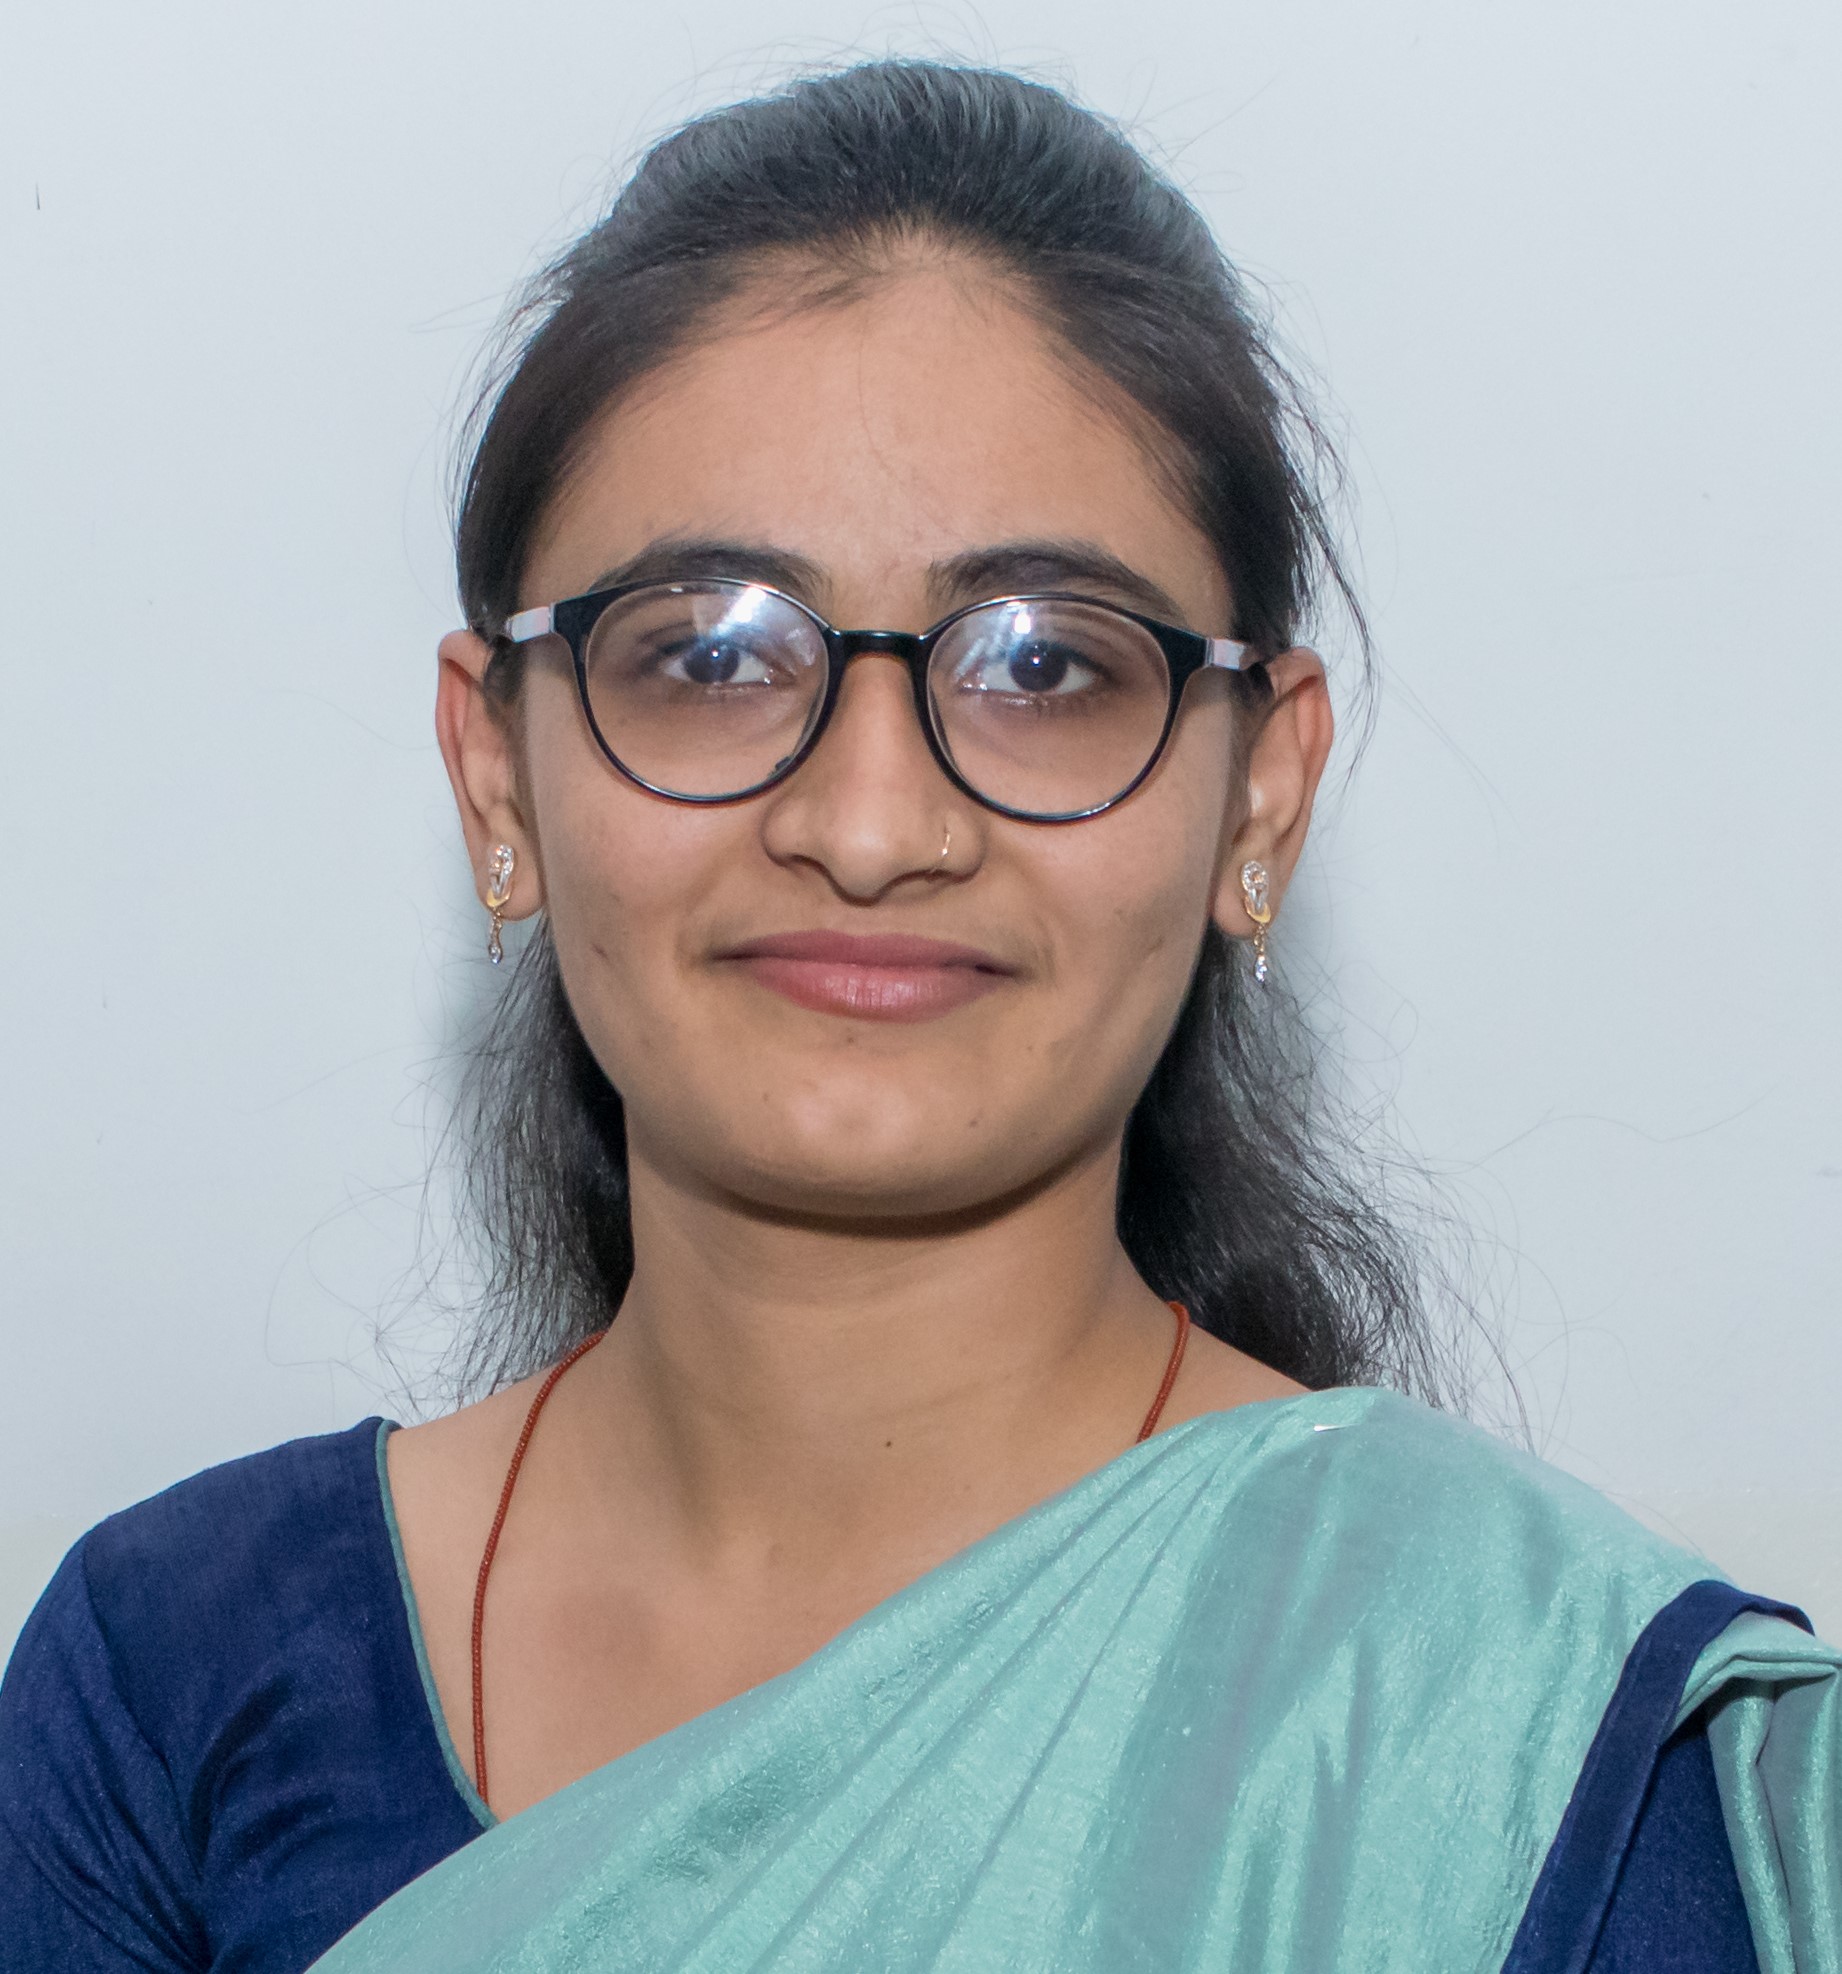 Monika Sardhara, at RK University